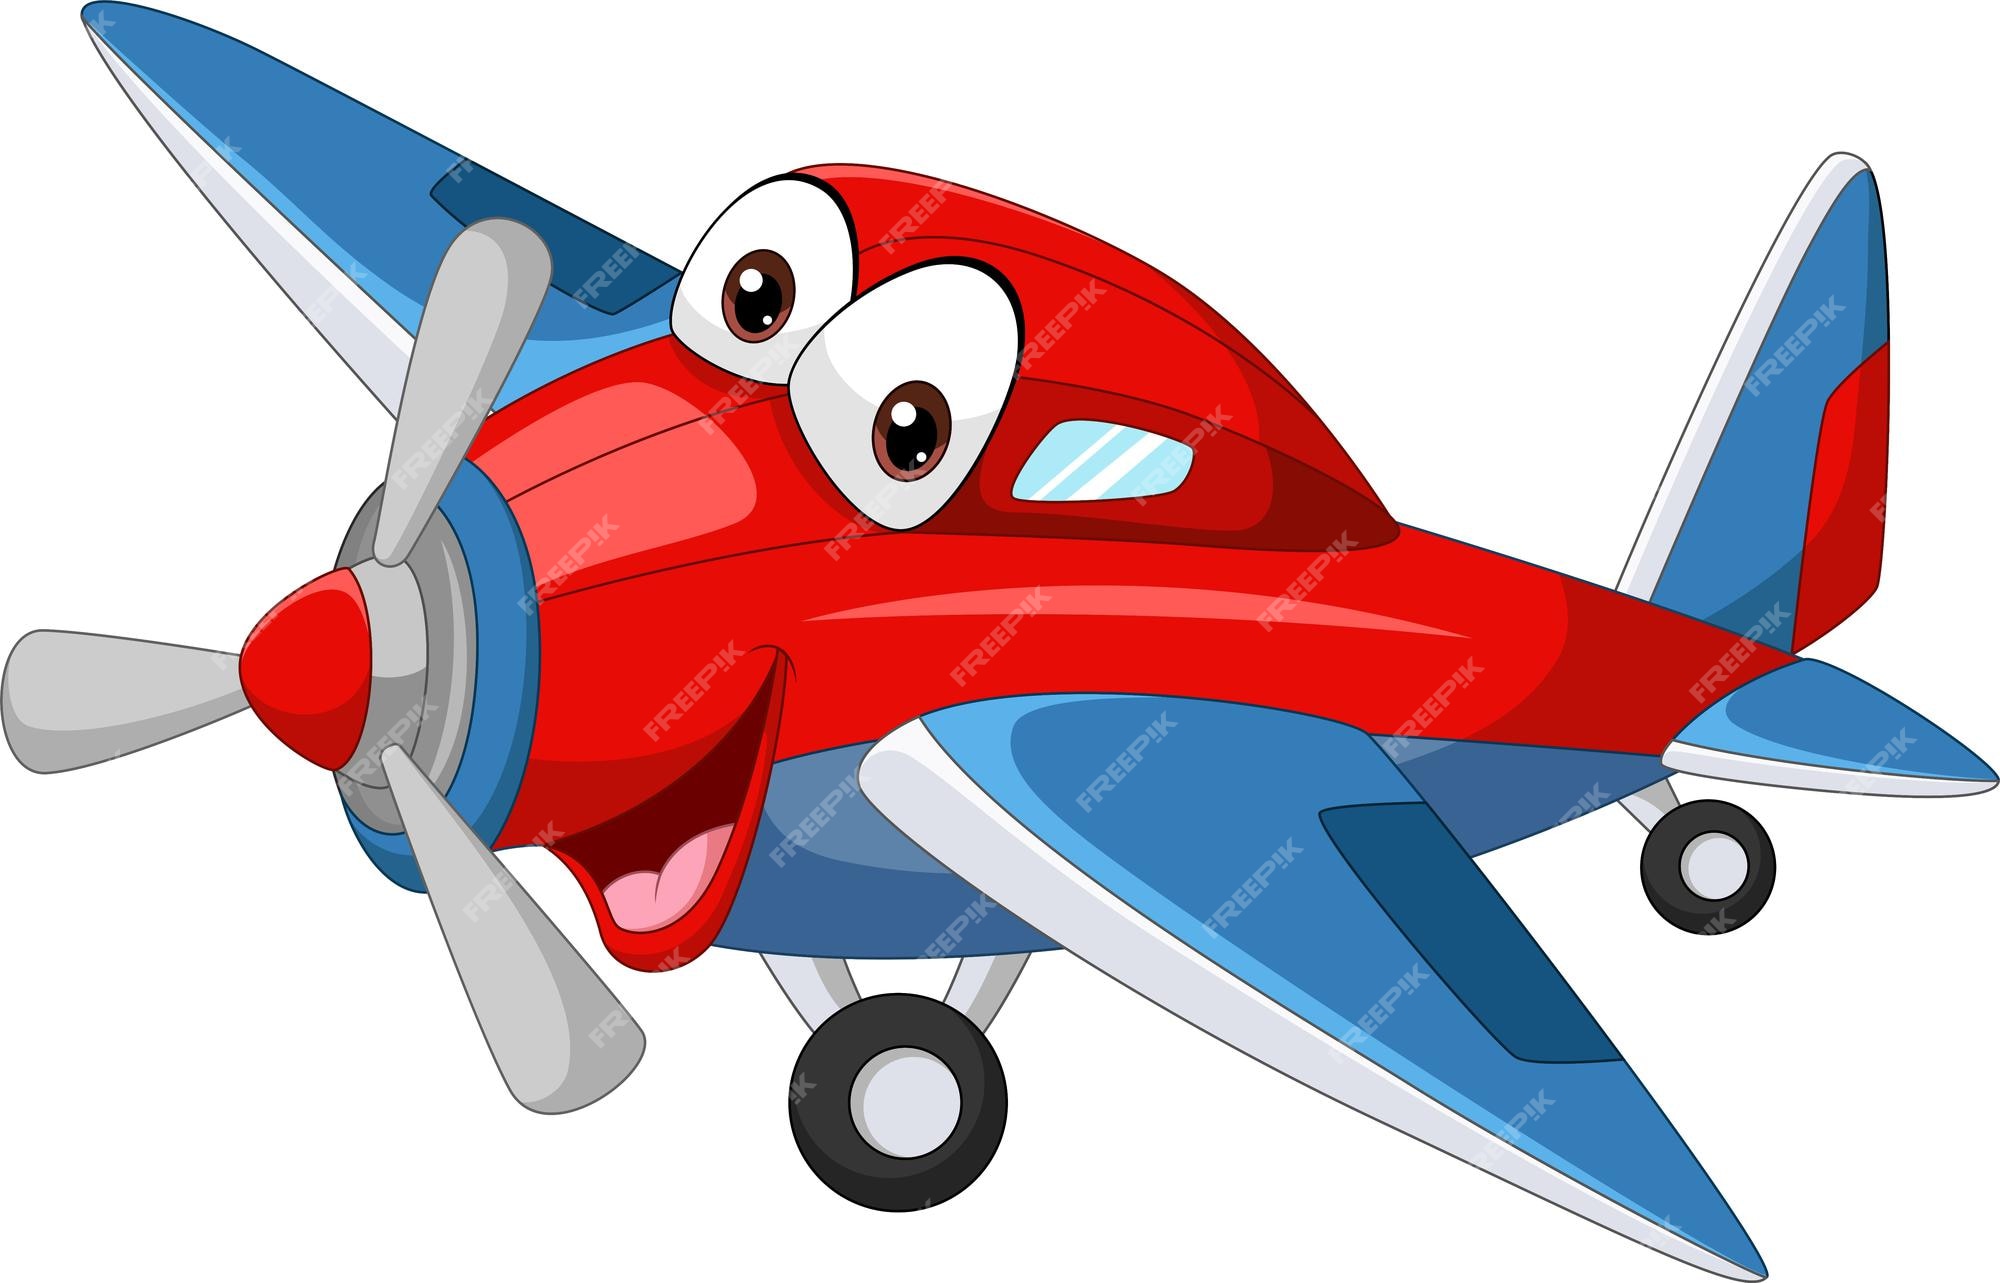 Cartoon Airplane Images - Free Download on Freepik